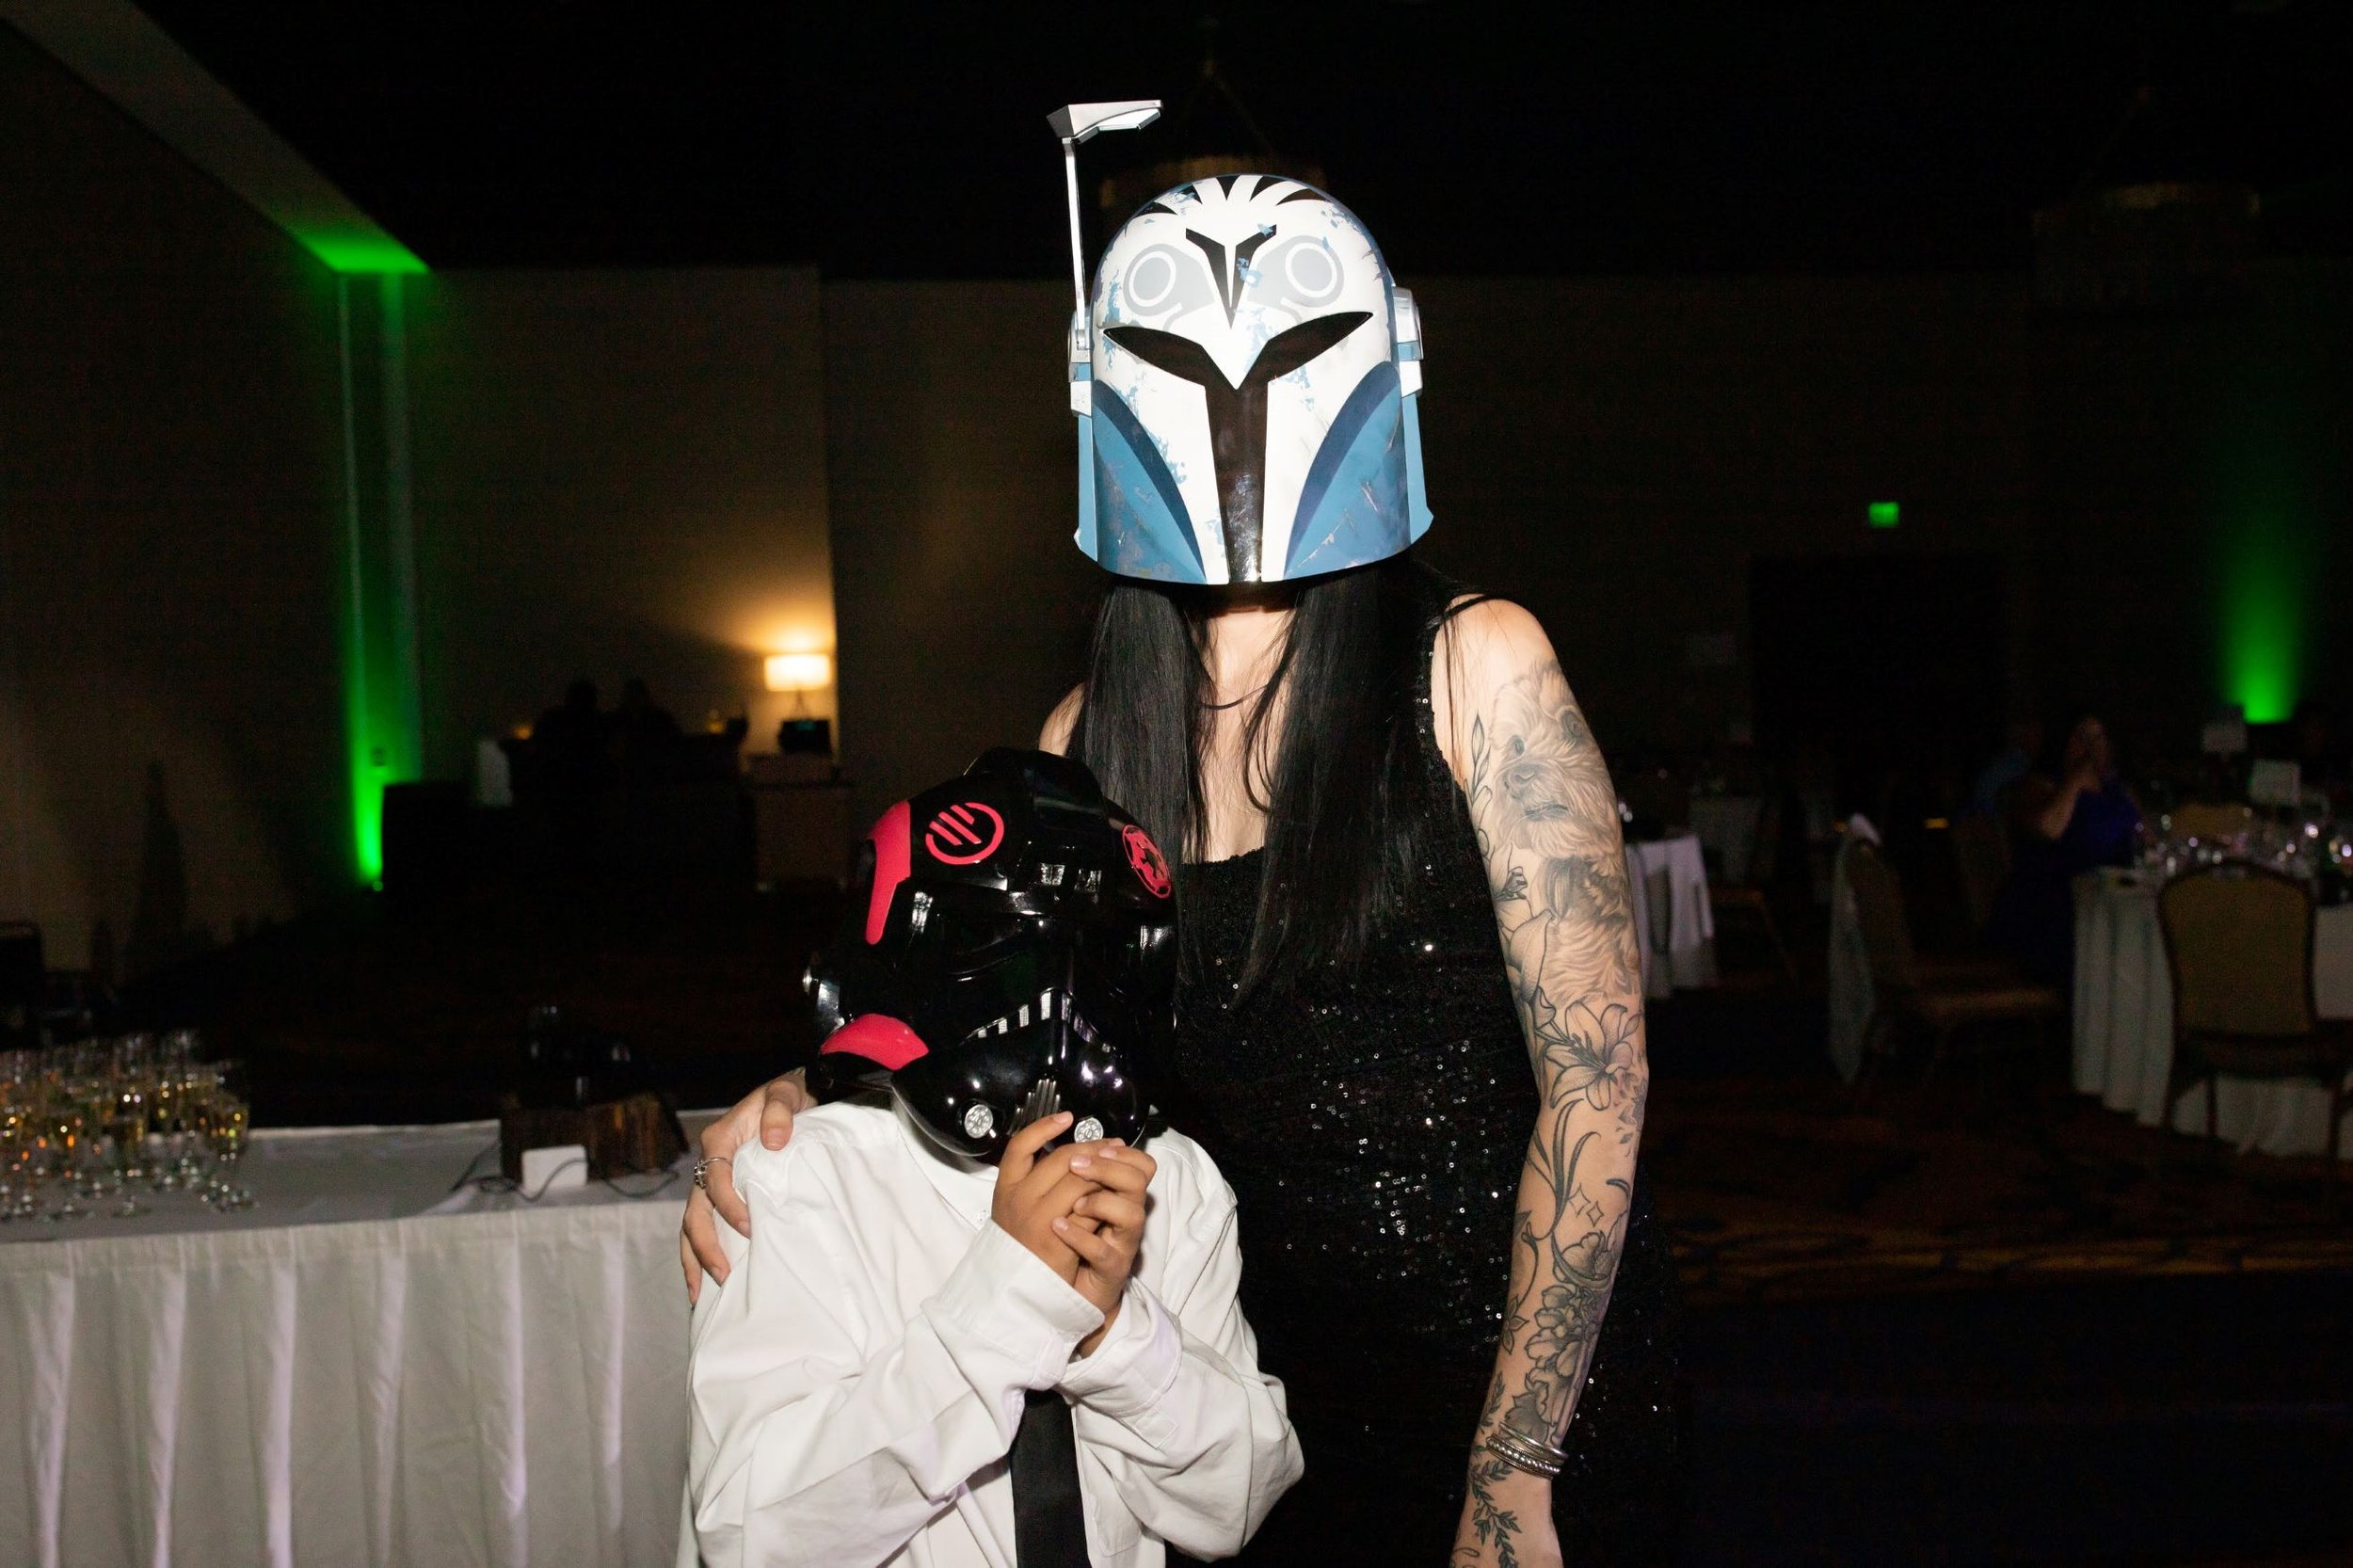 Star Wars Helmets on wedding guests.jpg